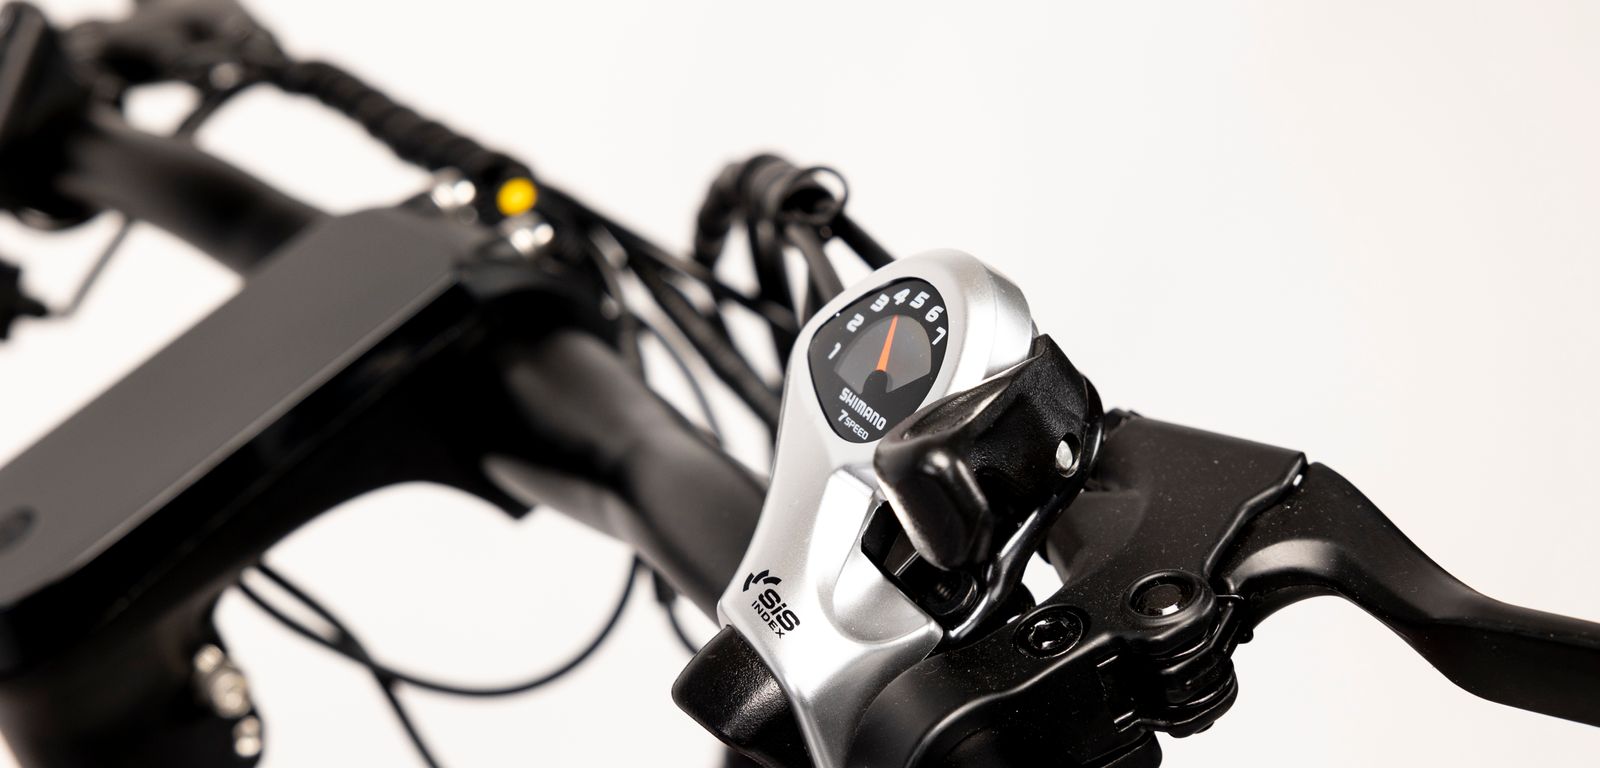 Rower Motus MTB - widok na kierownice oraz przerzutki firmy Shimano